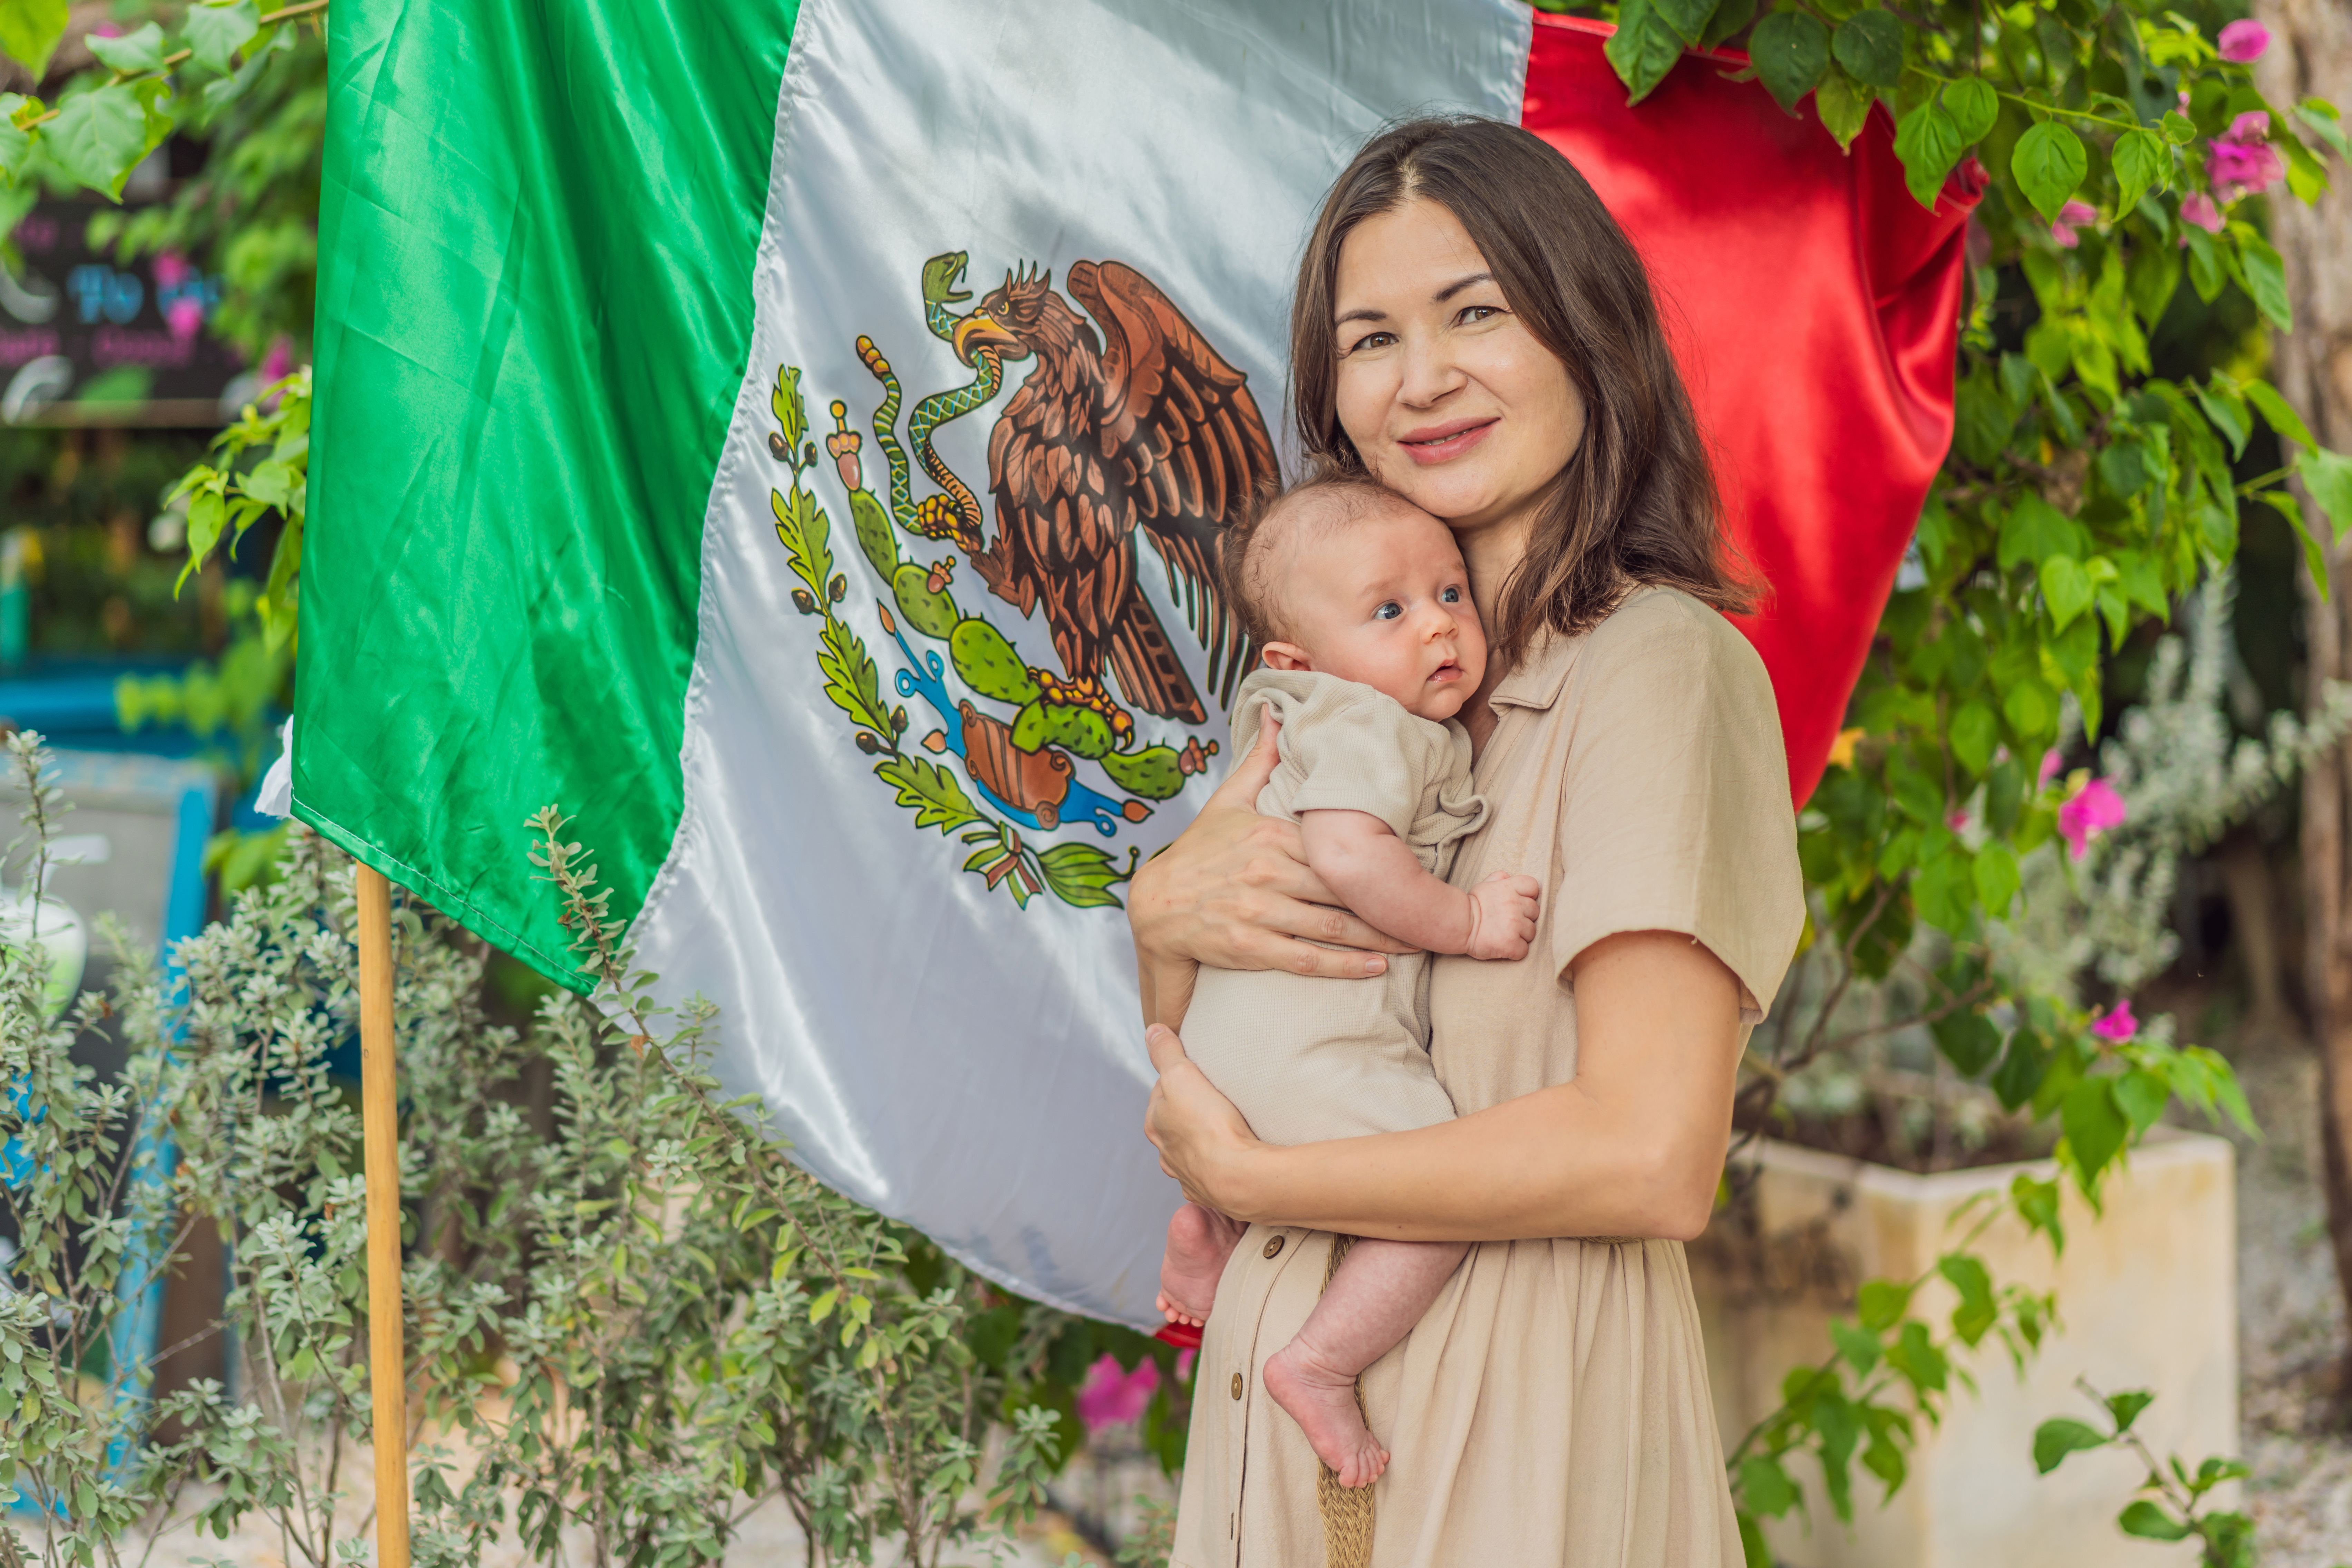 Childbirth in Mexico to obtain citizenship